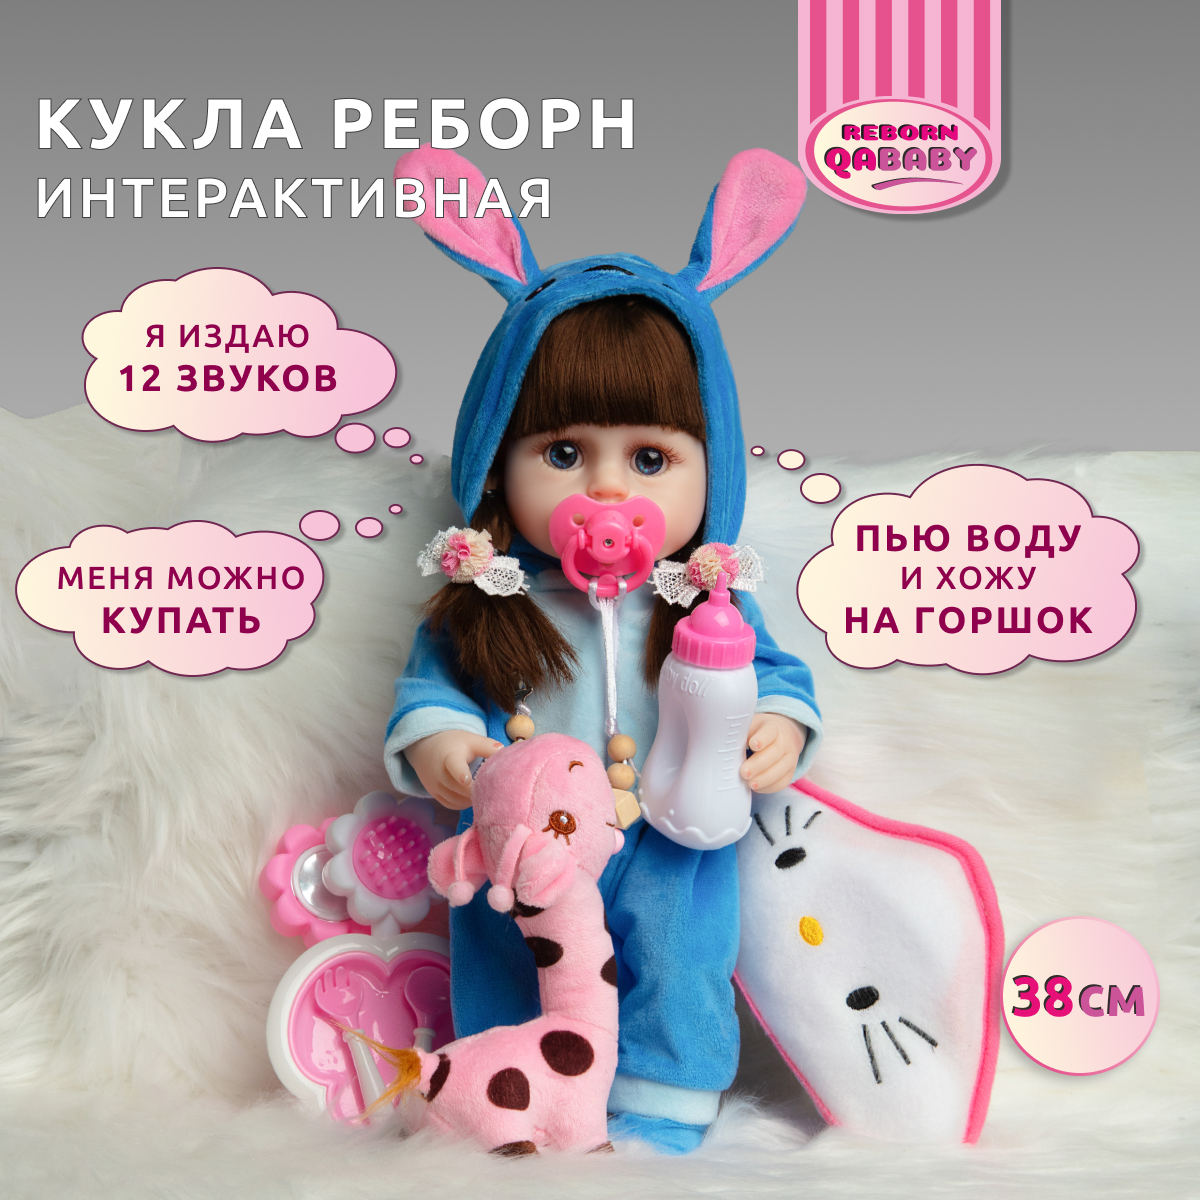 Кукла Реборн QA BABY Кэндис девочка интерактивная Пупс набор игрушки для ванной для девочки 38 см 3811 - фото 1